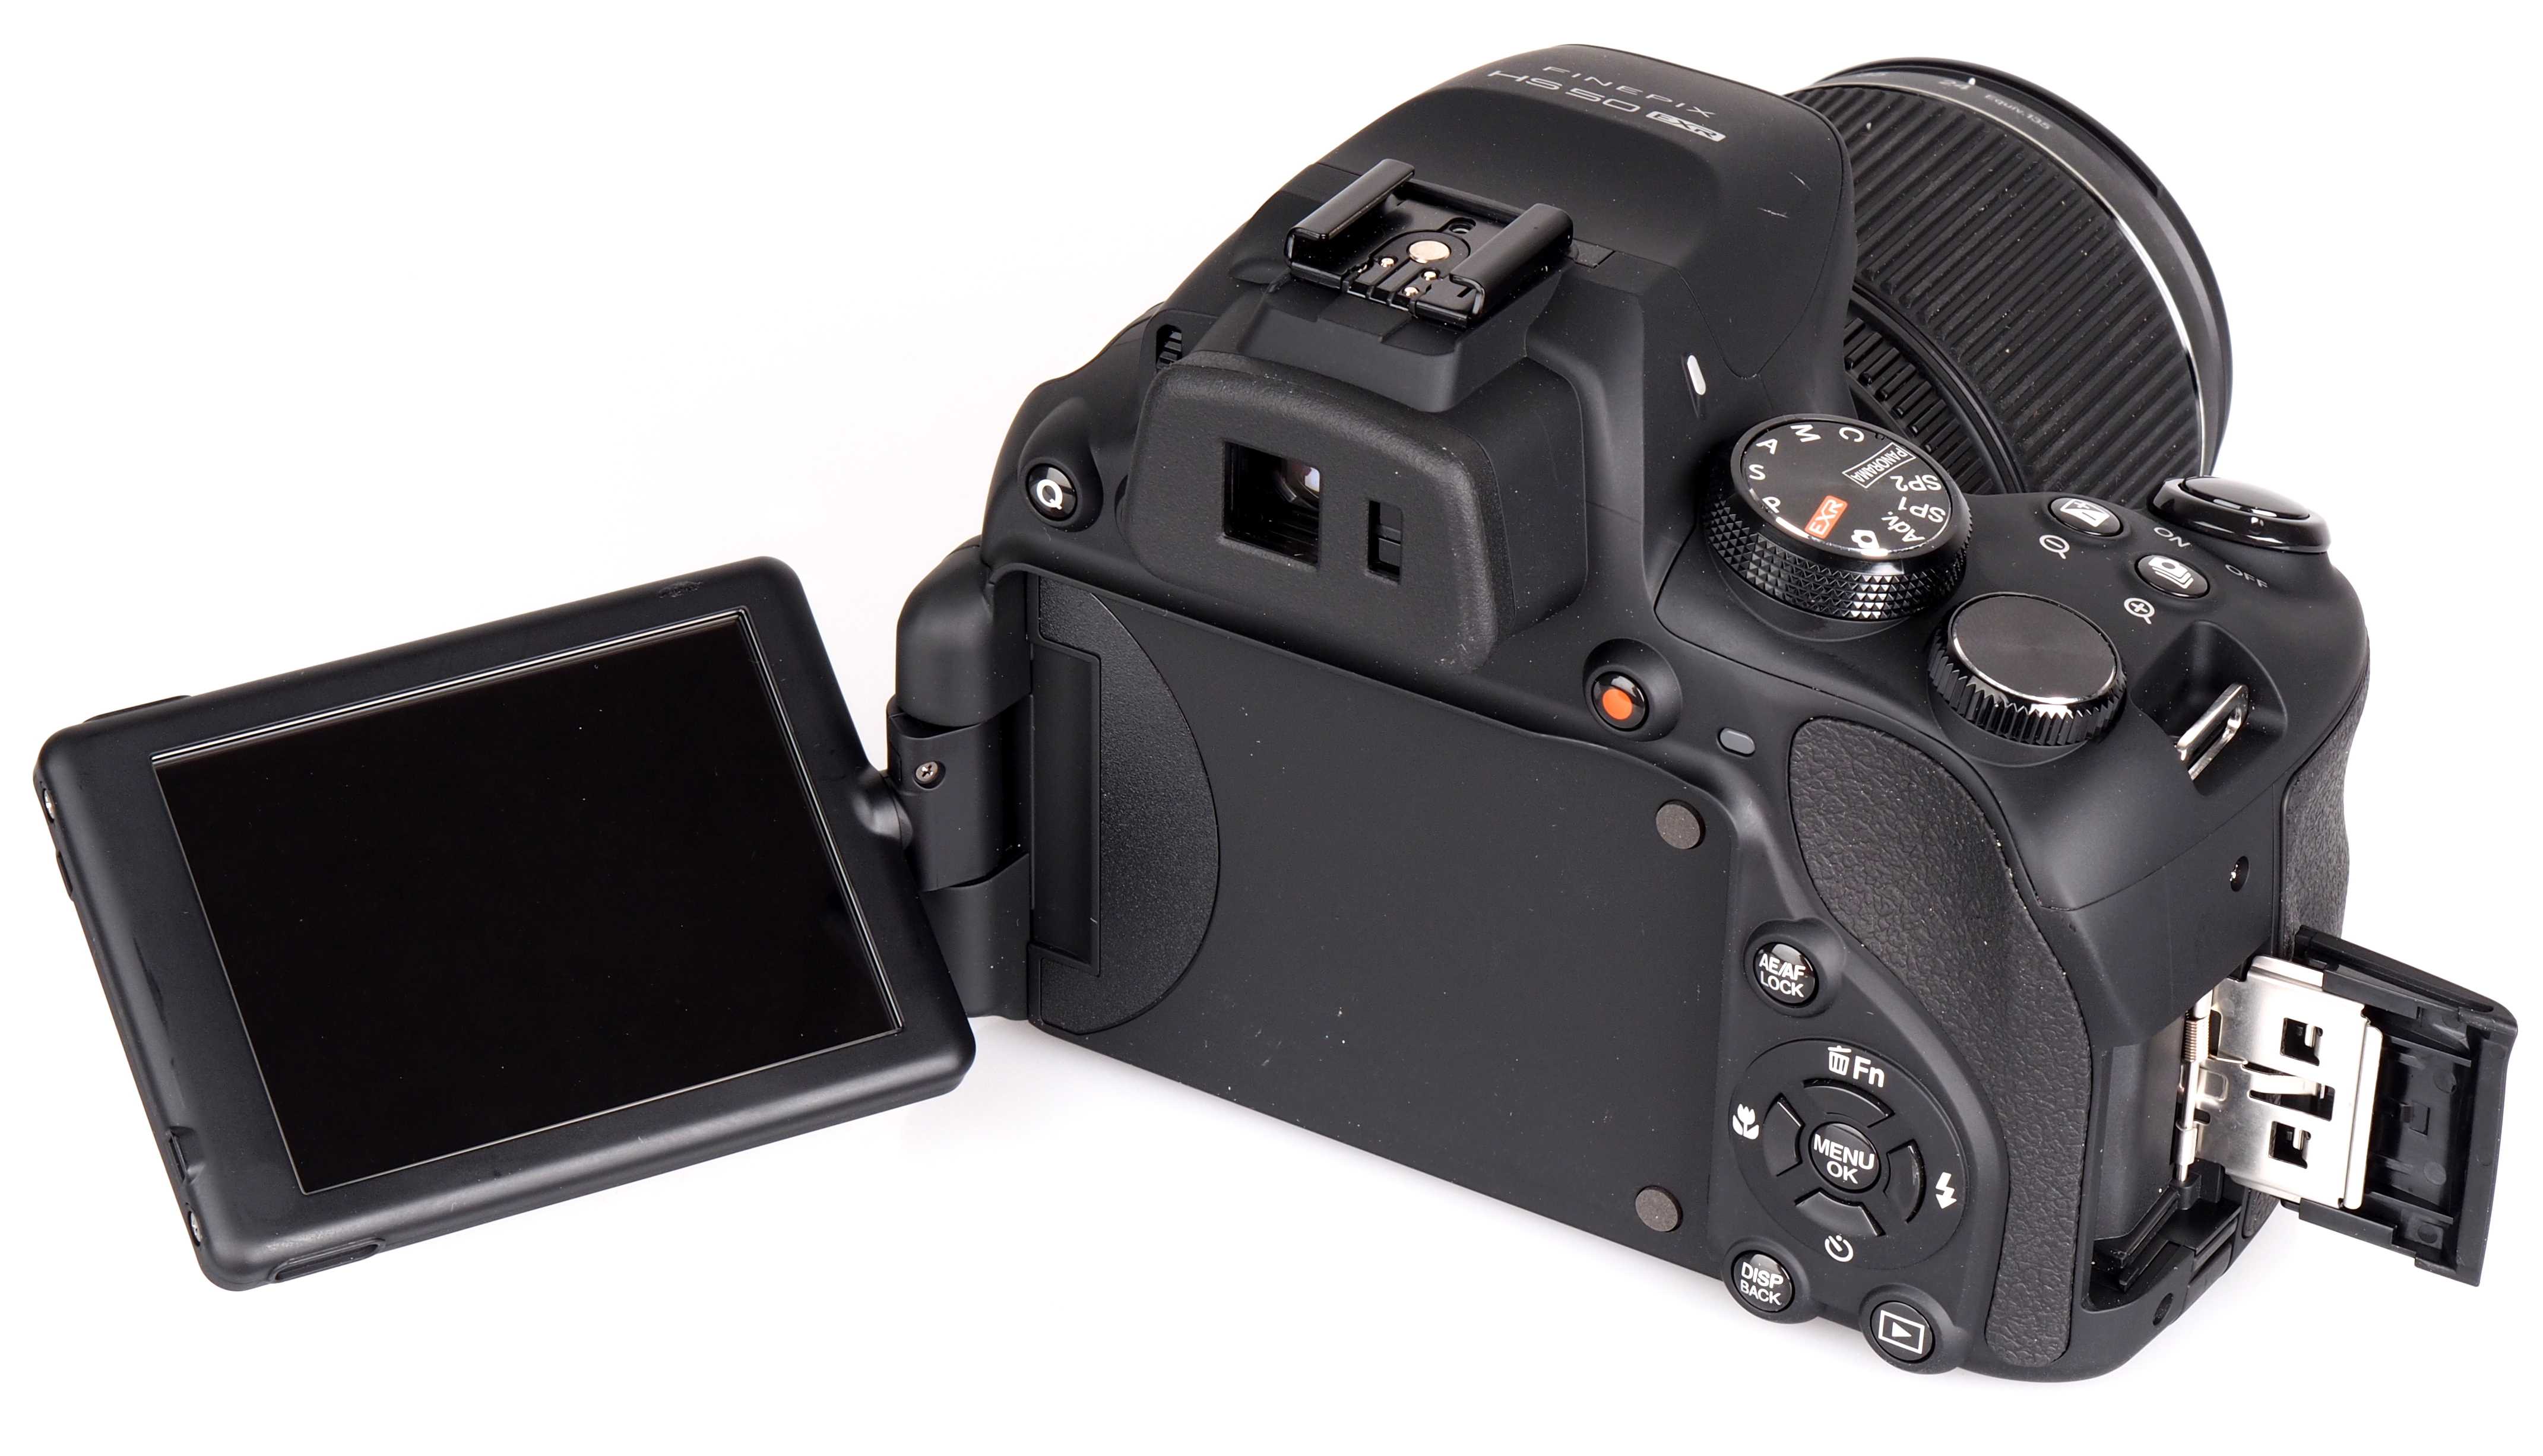 Fujifilm finepix hs50exr - купить  в краснодарский край, скидки, цена, отзывы, обзор, характеристики - фотоаппараты цифровые